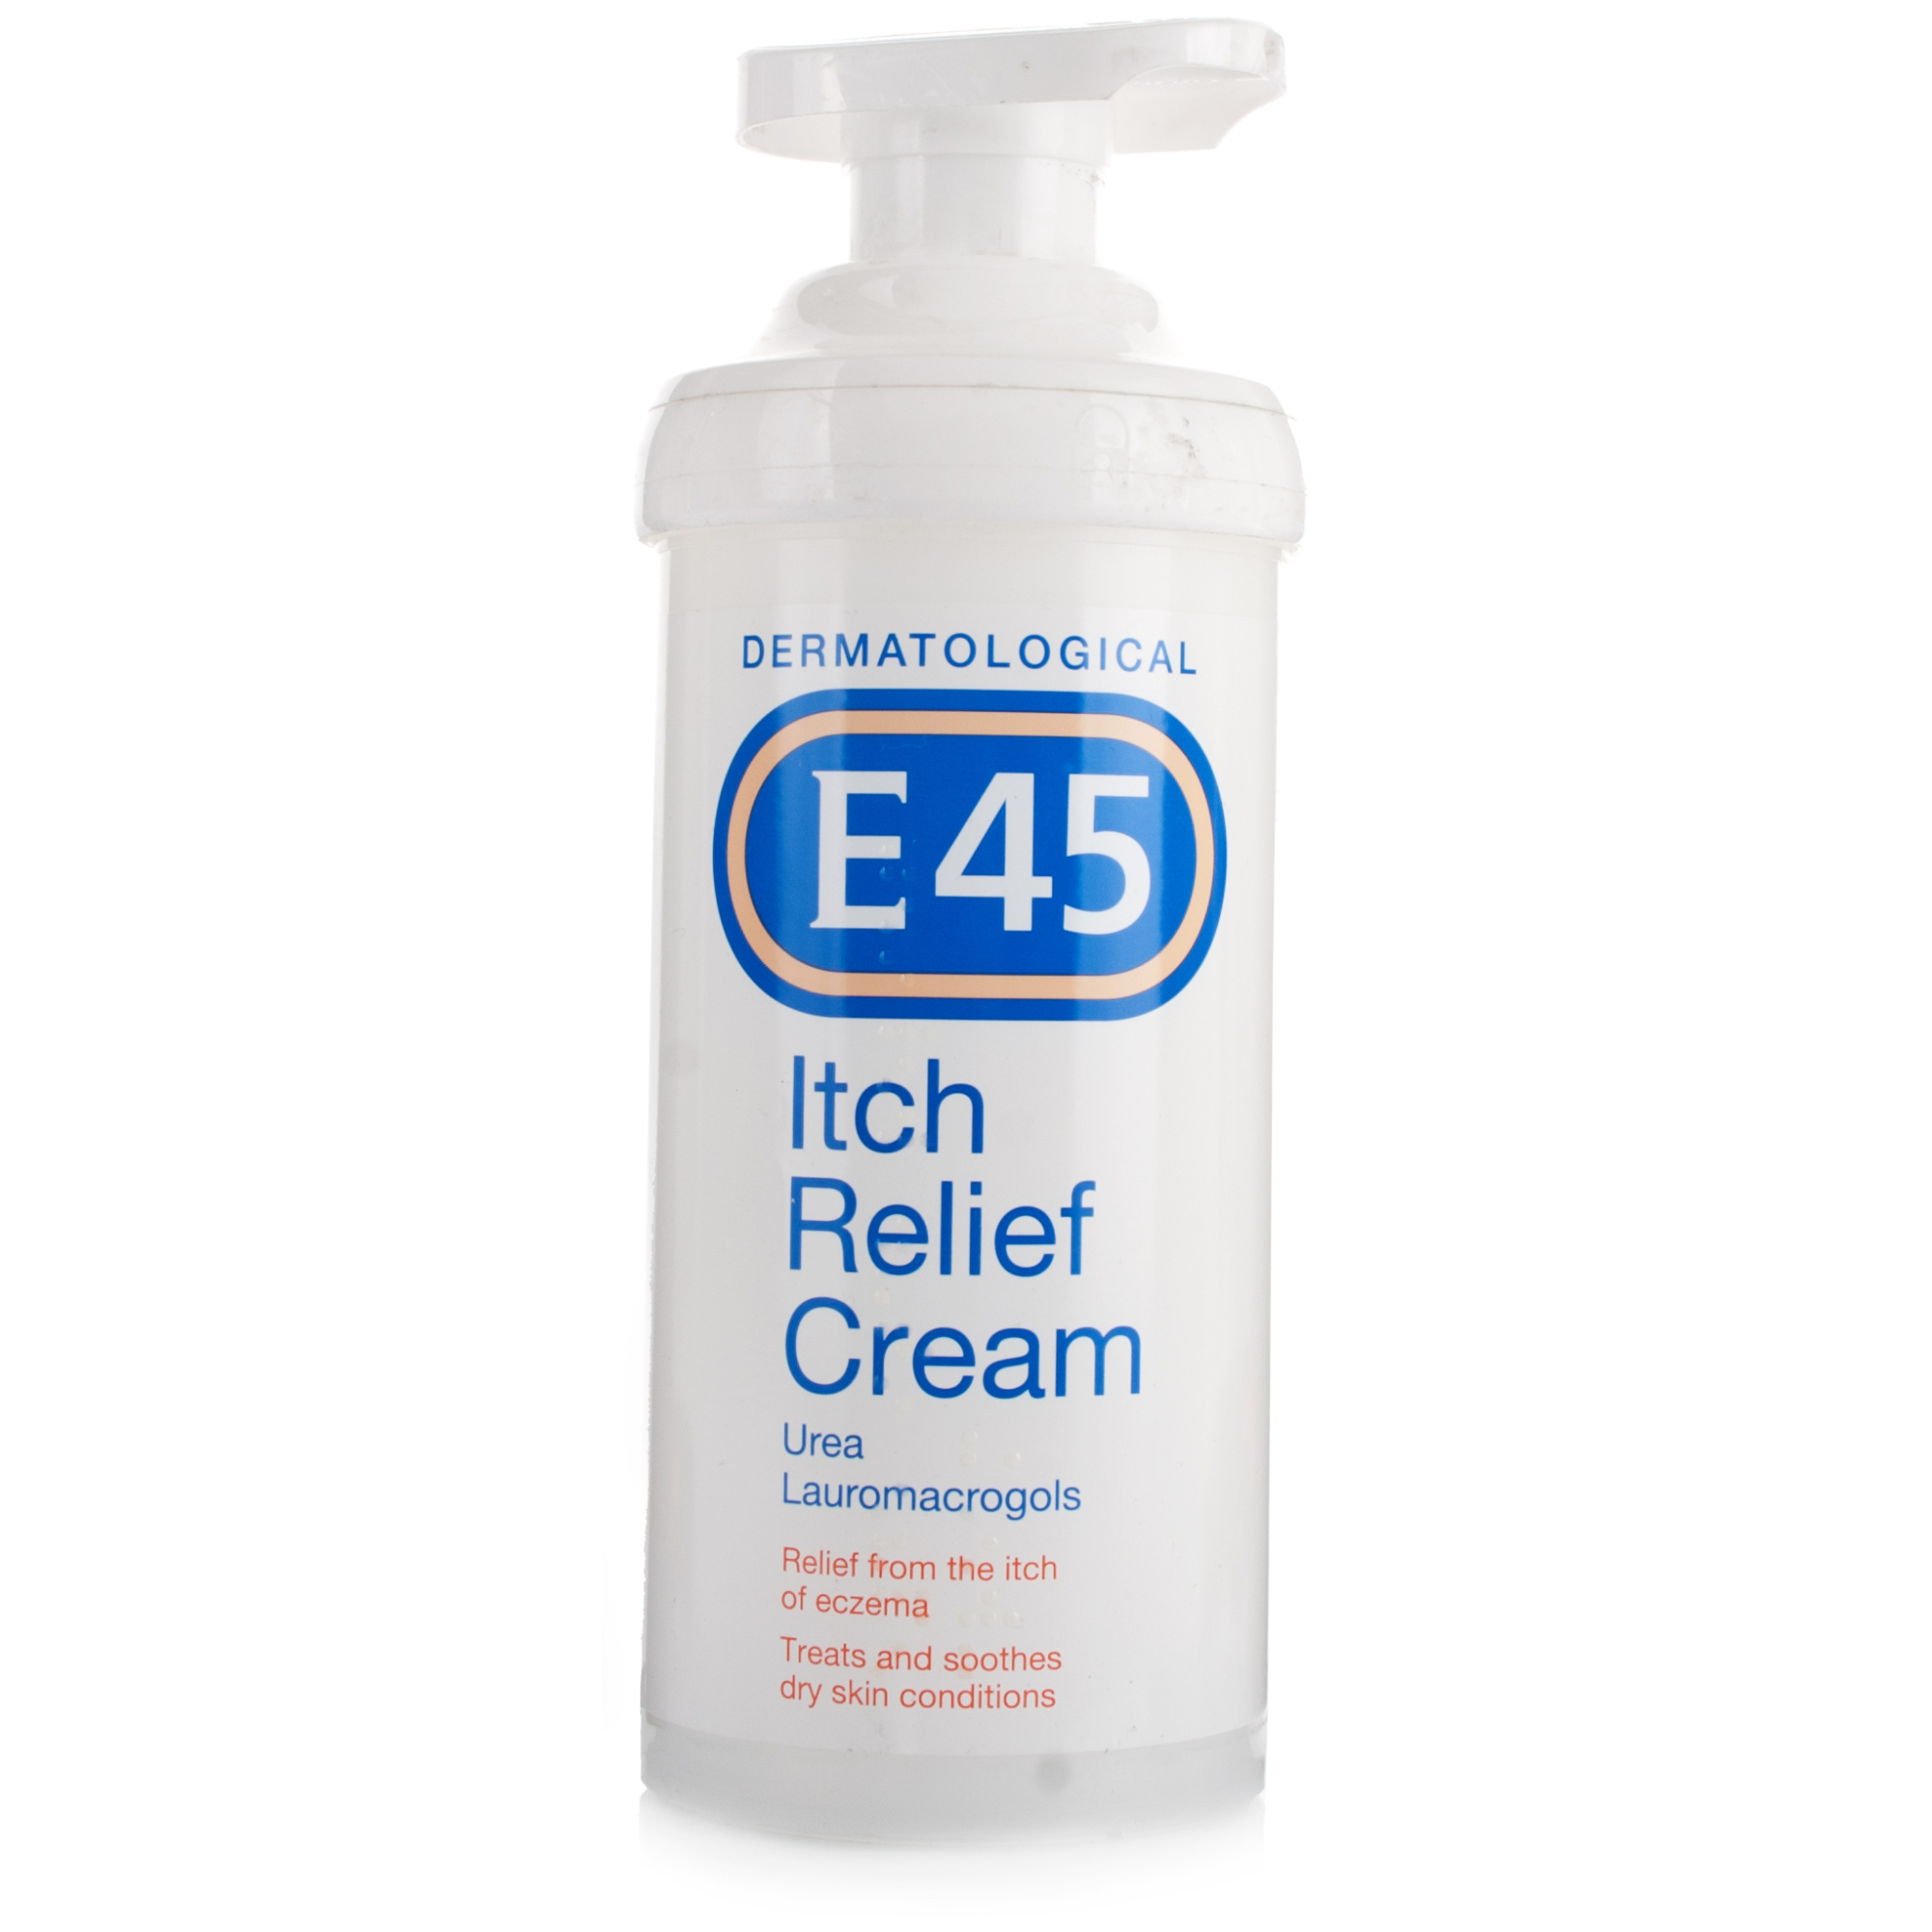 E45 Itch Relief Cream 500g Skin Care Chemist Direct